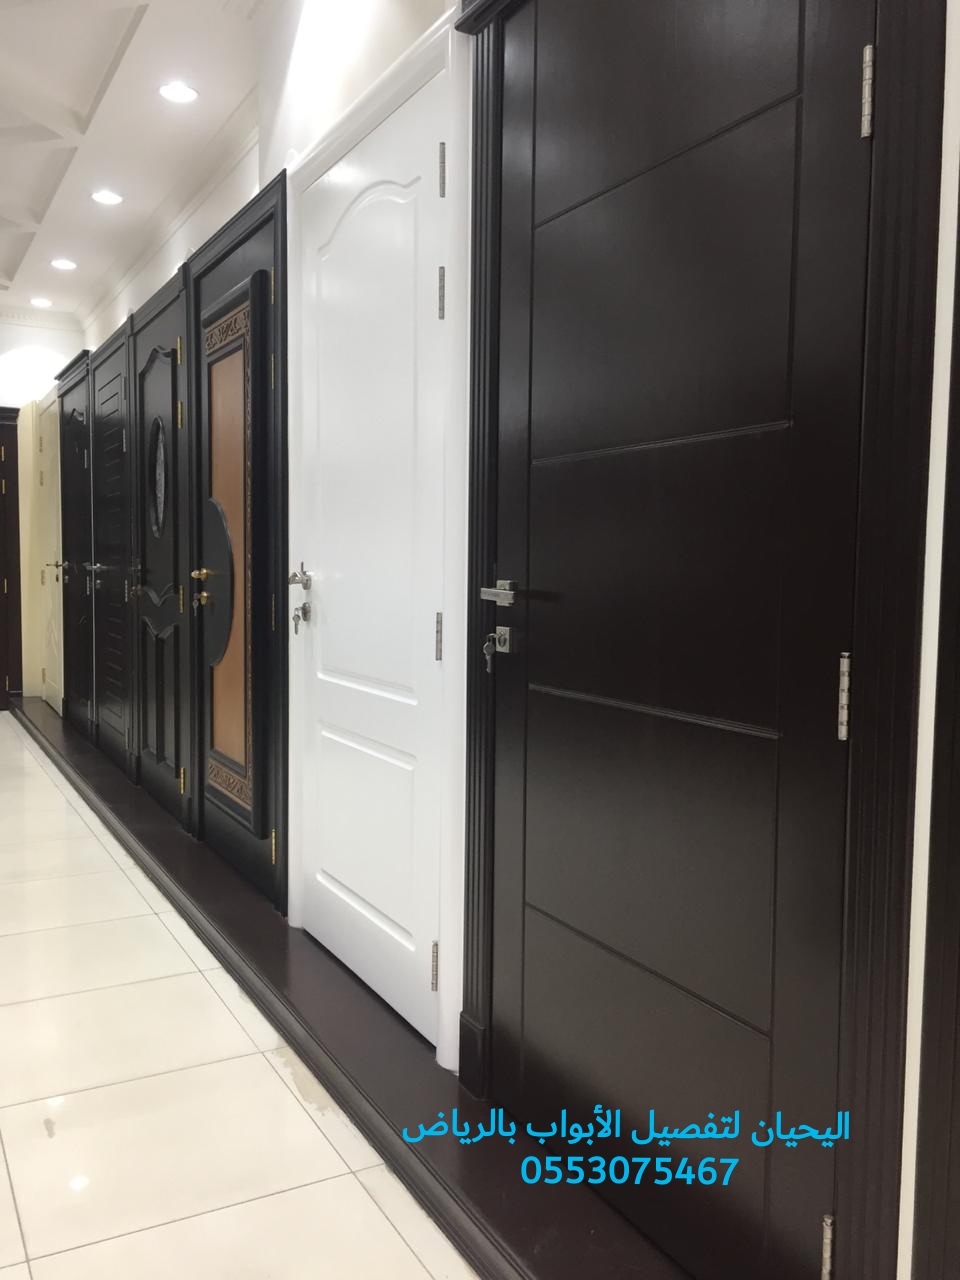 اليحيان لتصنيع وتفصيل أبواب خشب بالرياض 0553075467 أبواب حديد للبيع في الرياض،ابواب ليزر للبيع بالرياض P_1550ra00l3